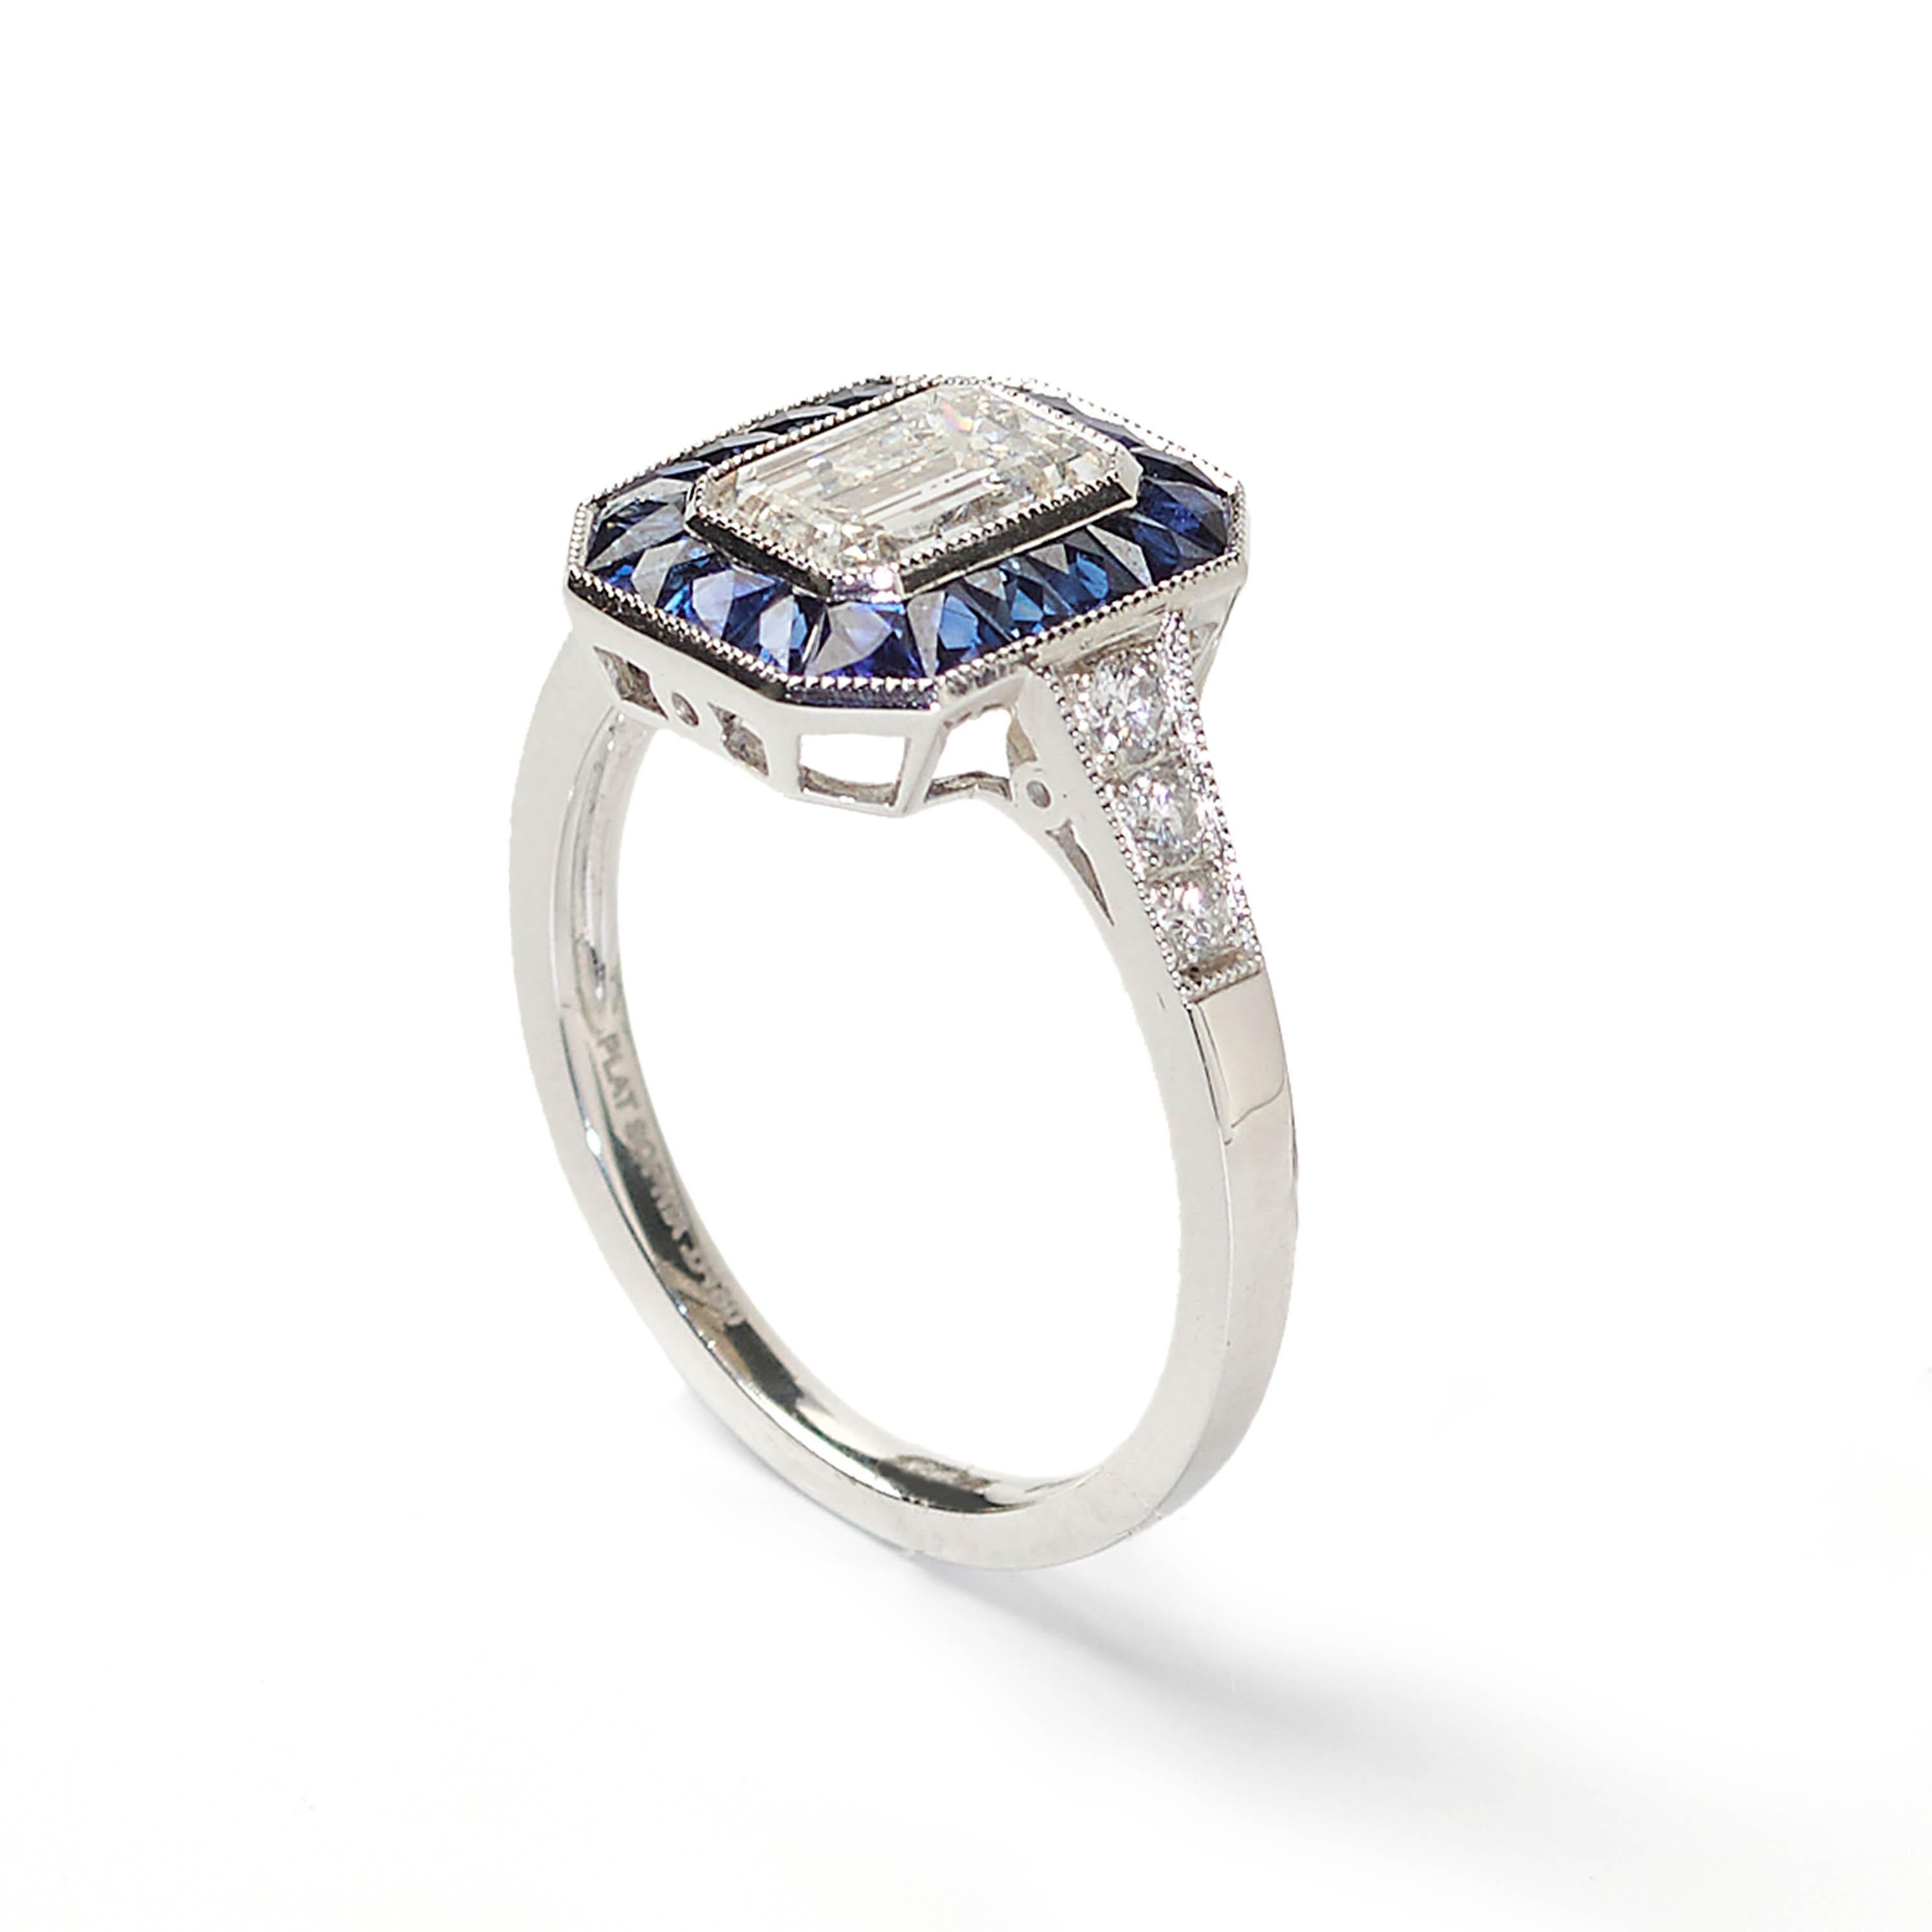 Ein moderner, achteckiger Ring mit einem zentralen Diamanten im Smaragdschliff mit einem Gewicht von 1,01 Karat, umgeben von einer Umrandung aus Saphiren mit einem Gesamtgewicht von 0,78 Karat, mit Diamanten an den Schultern mit einem Gesamtgewicht